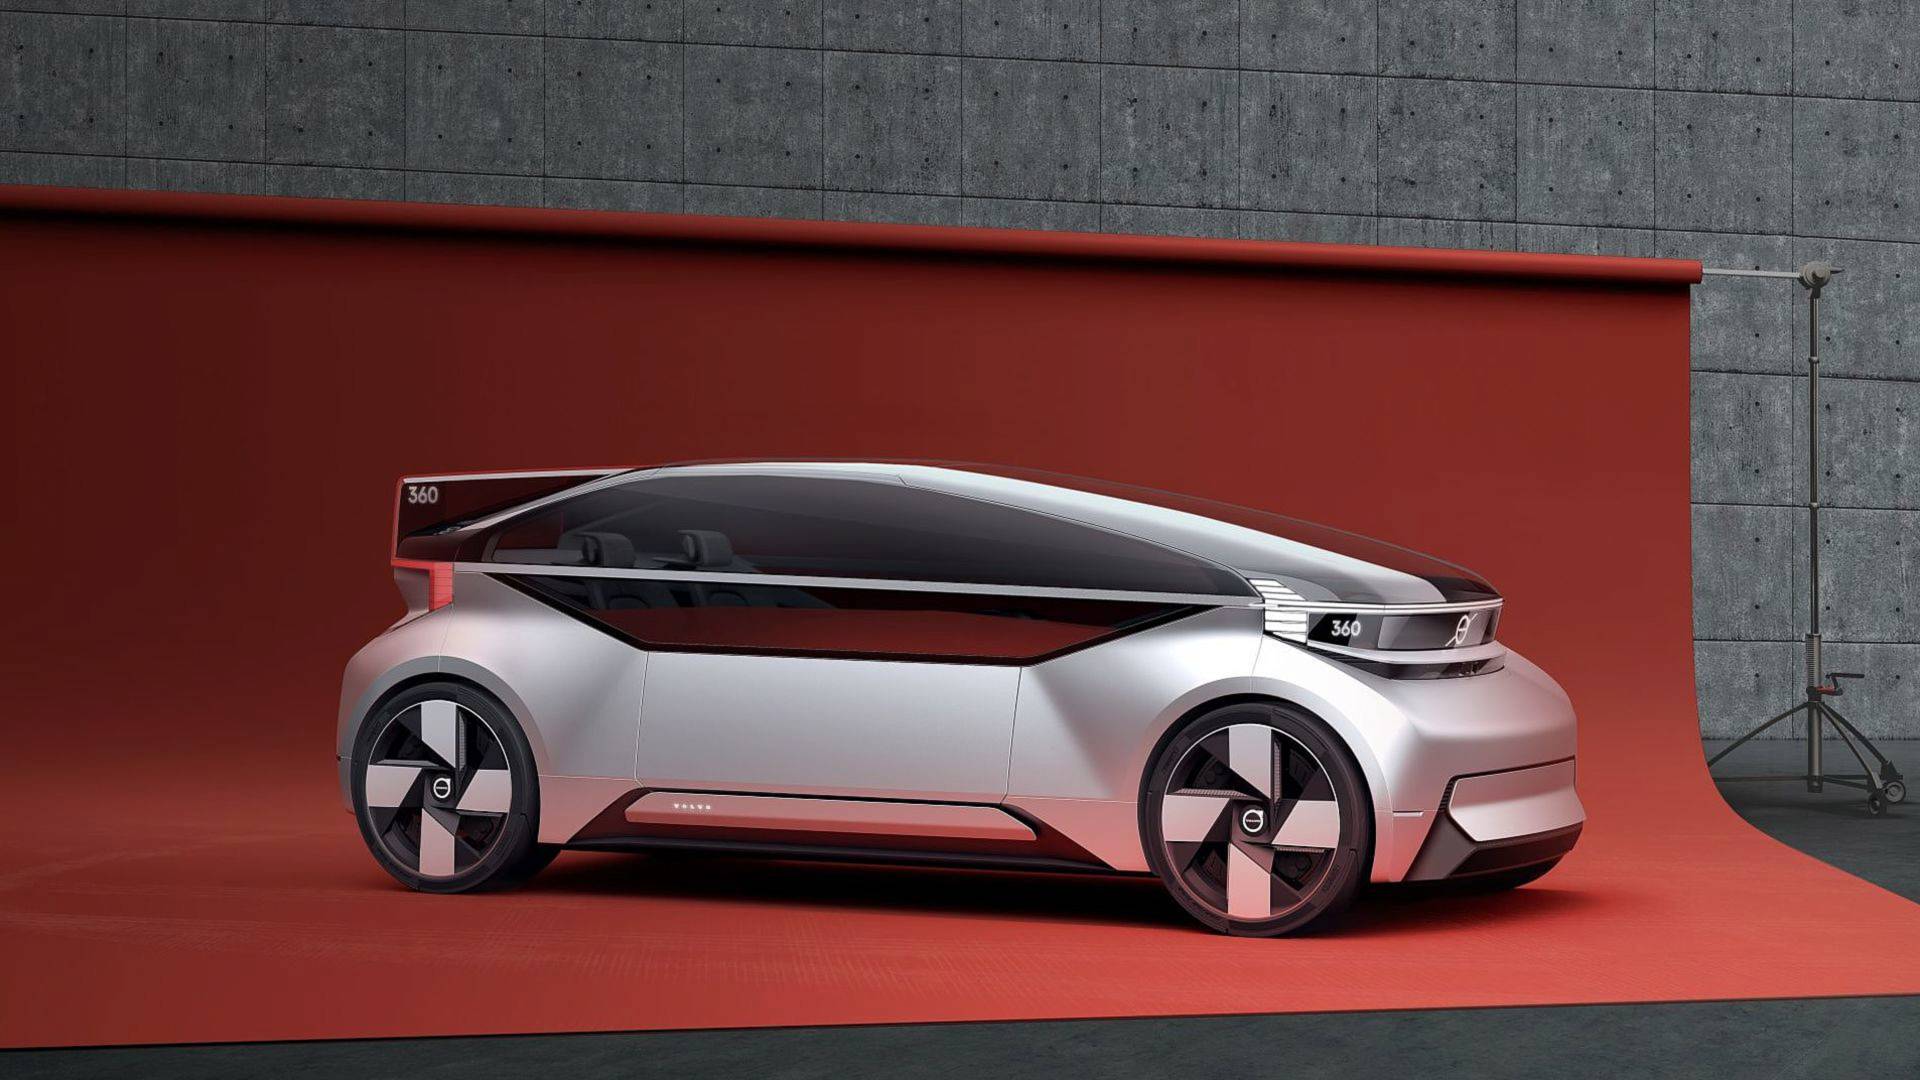  آشنایی با  360C، خودروی آینده ولوو + عکس 